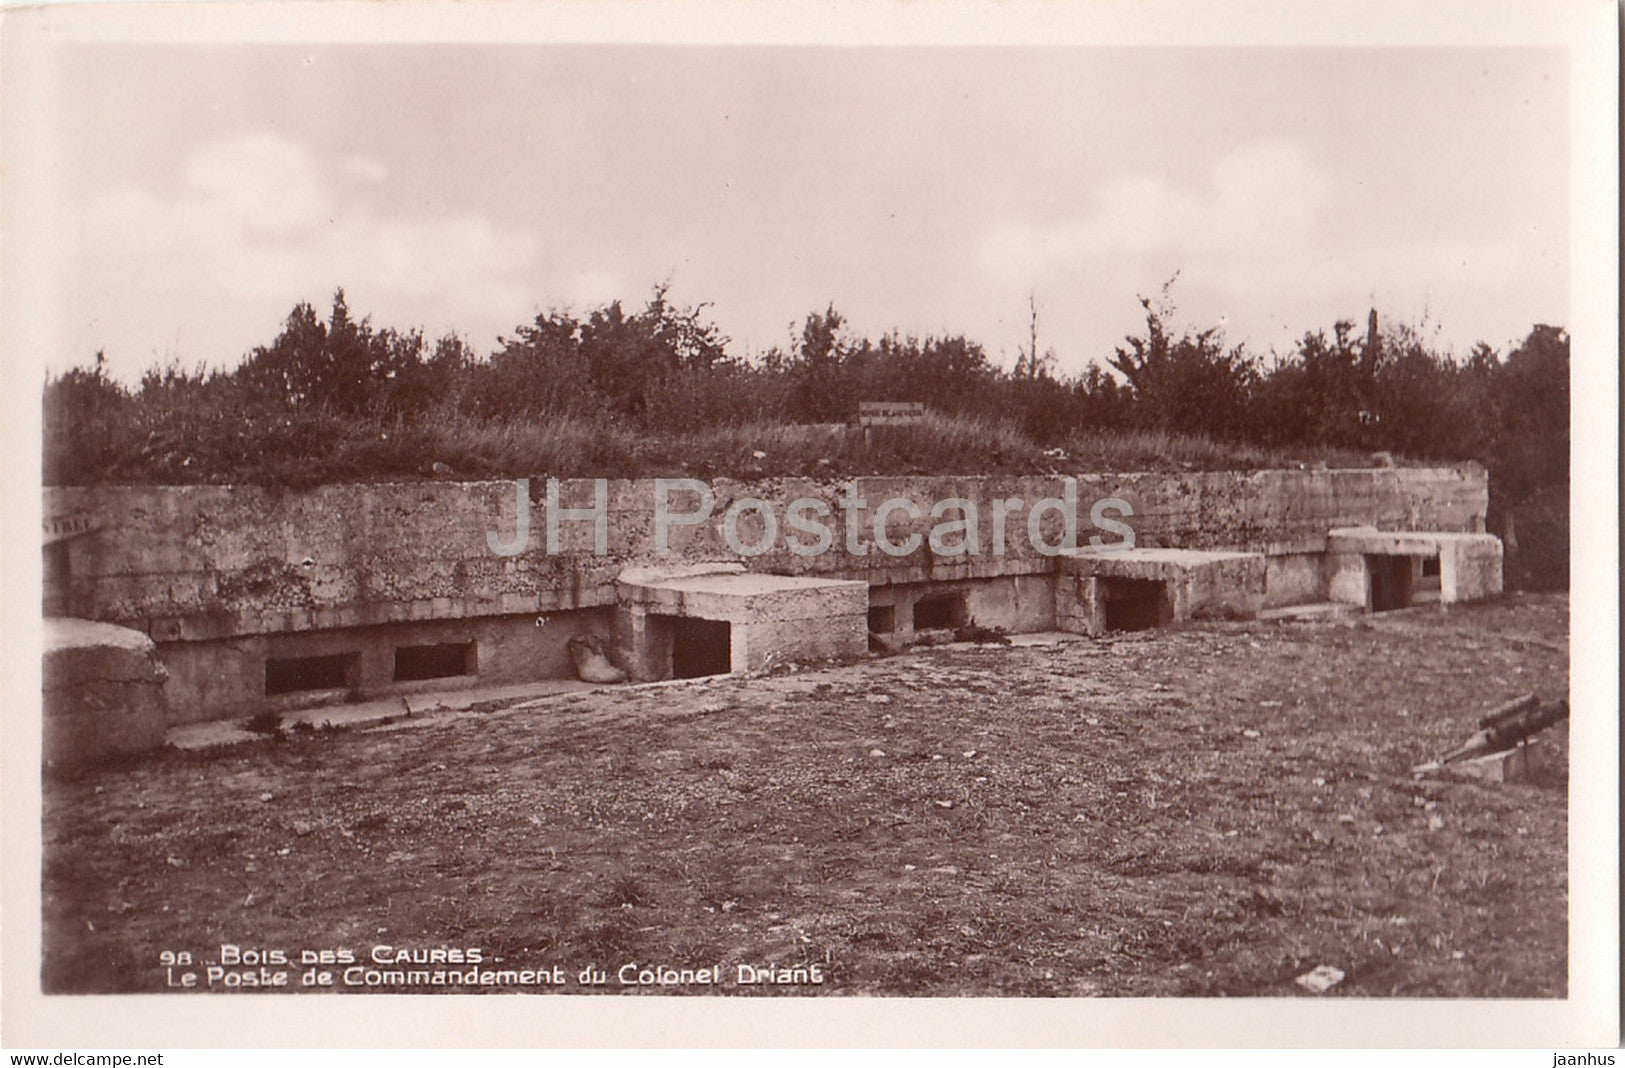 Bois des Caures - Le Poste de Commandement du Colonel Driant - WWI - military - 98 - old postcard - France - unused - JH Postcards